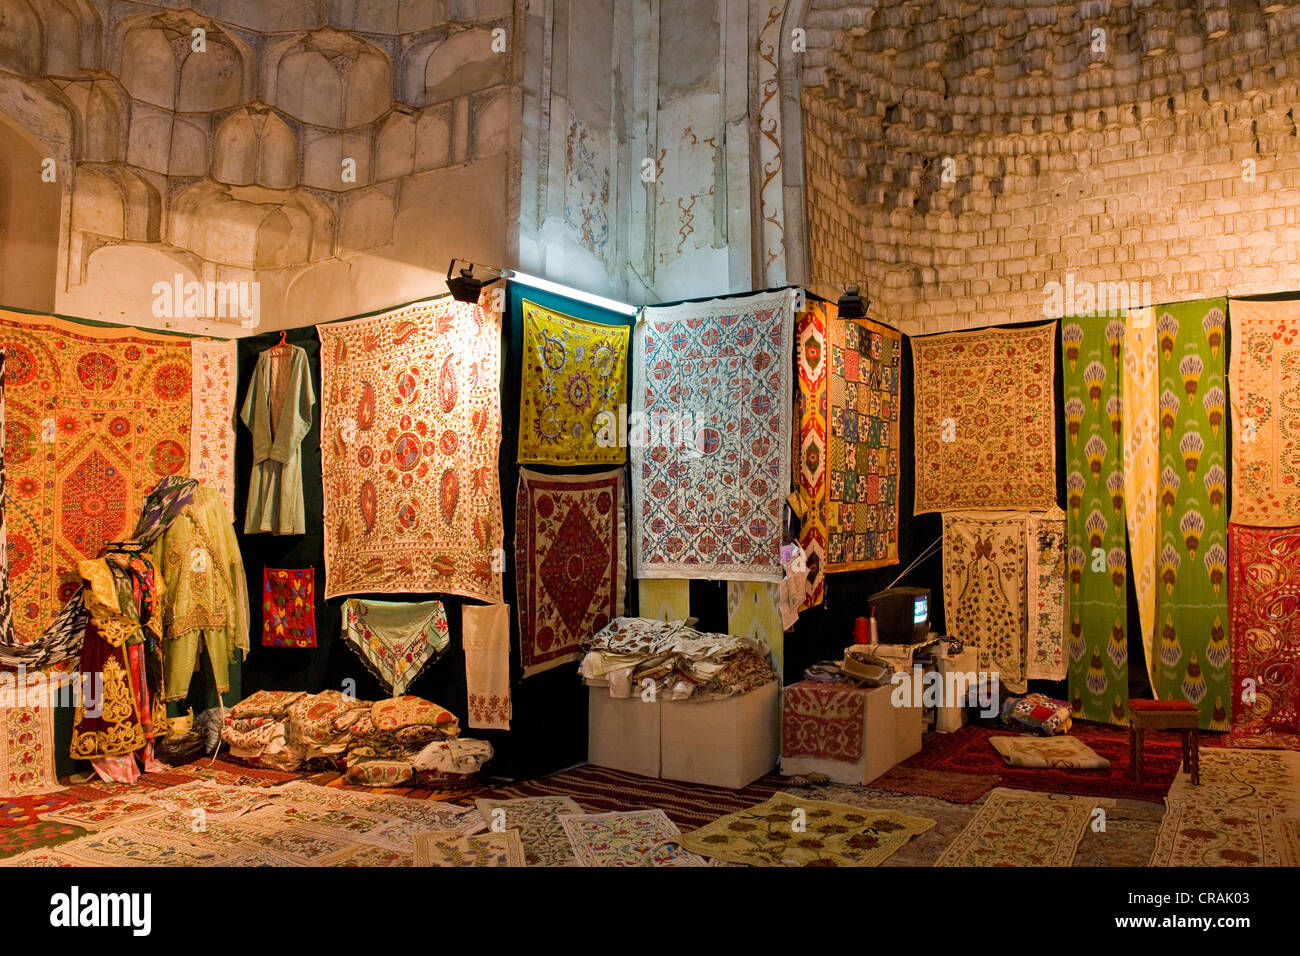 Uzbekistan, Bukhara, carpets shop Stock Photo